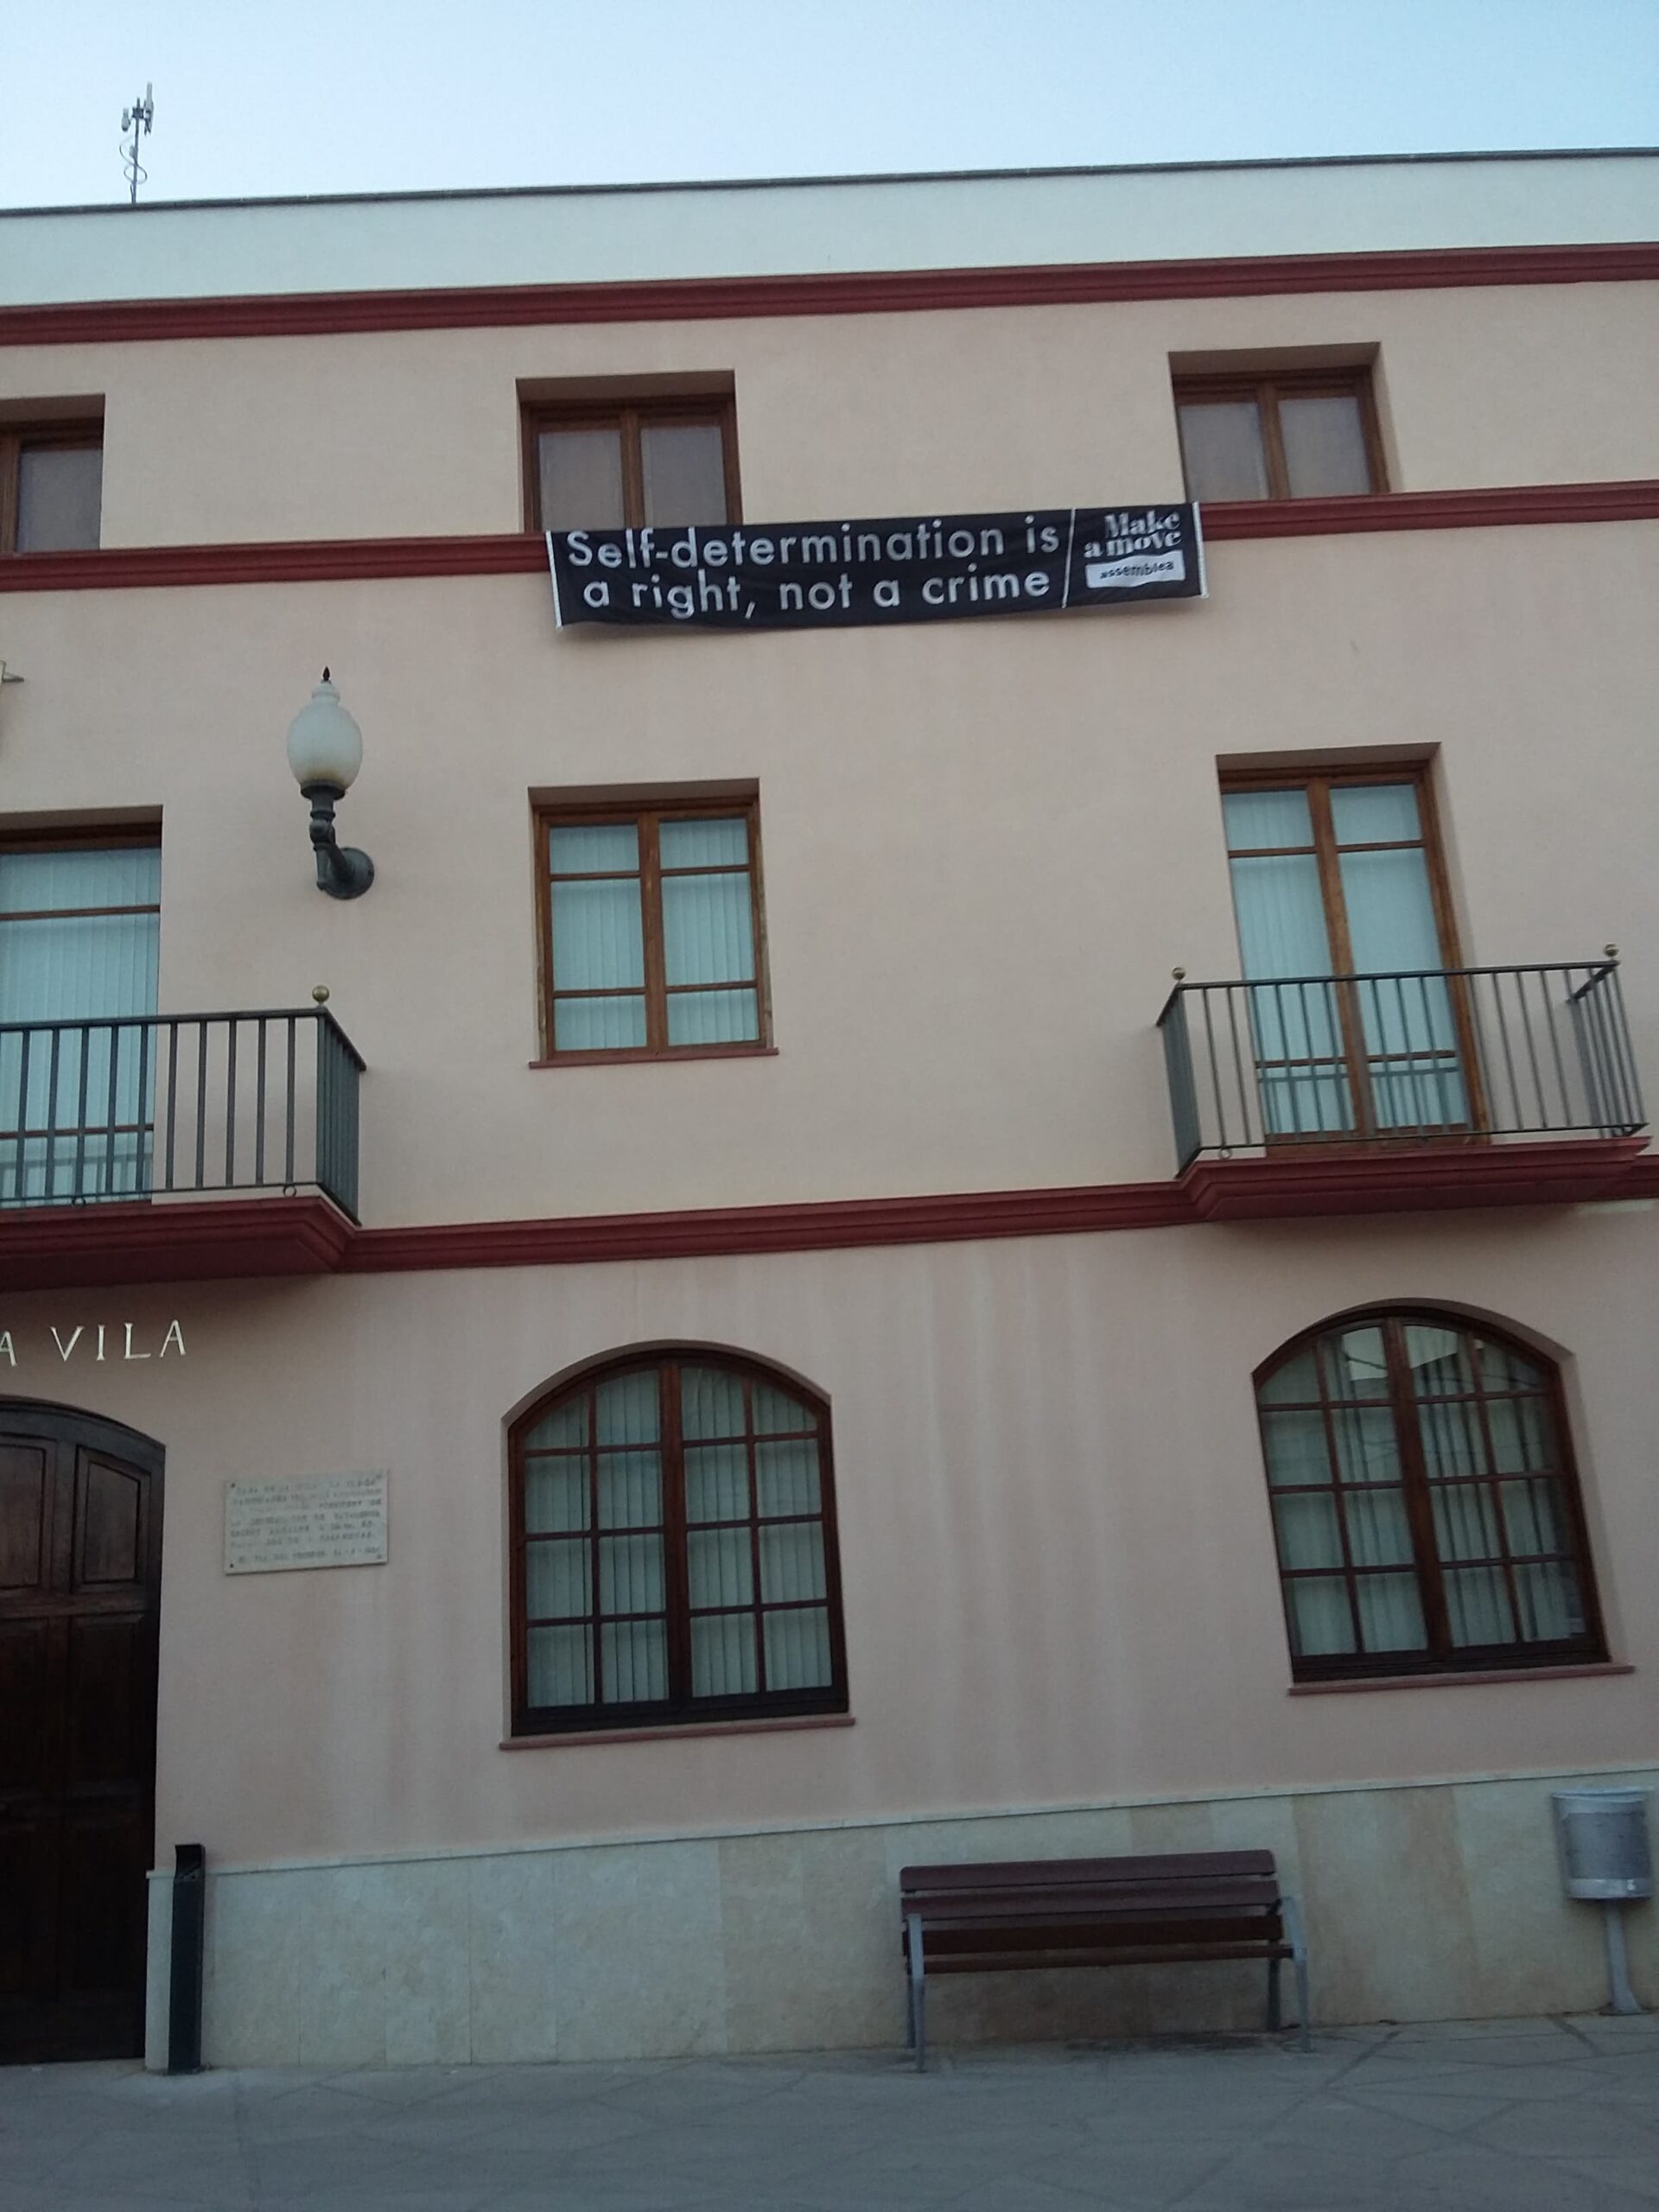 El Ayuntamiento del Pla del Penedès vuelve a poner una pancarta en la hace